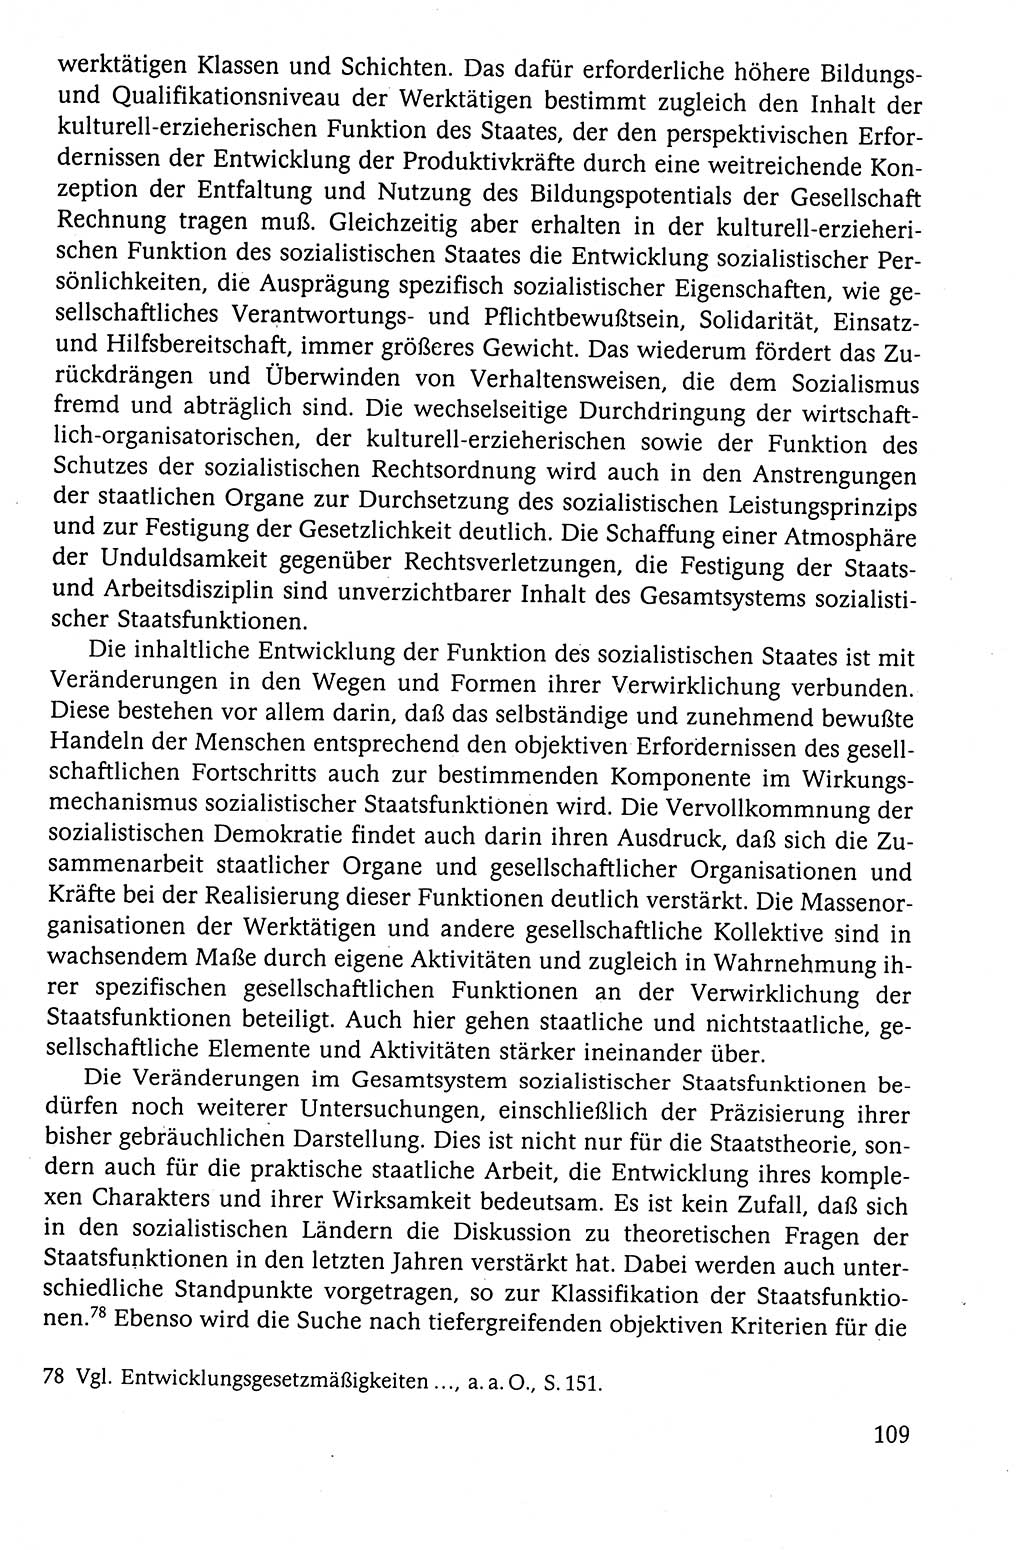 Der Staat im politischen System der DDR (Deutsche Demokratische Republik) 1986, Seite 109 (St. pol. Sys. DDR 1986, S. 109)